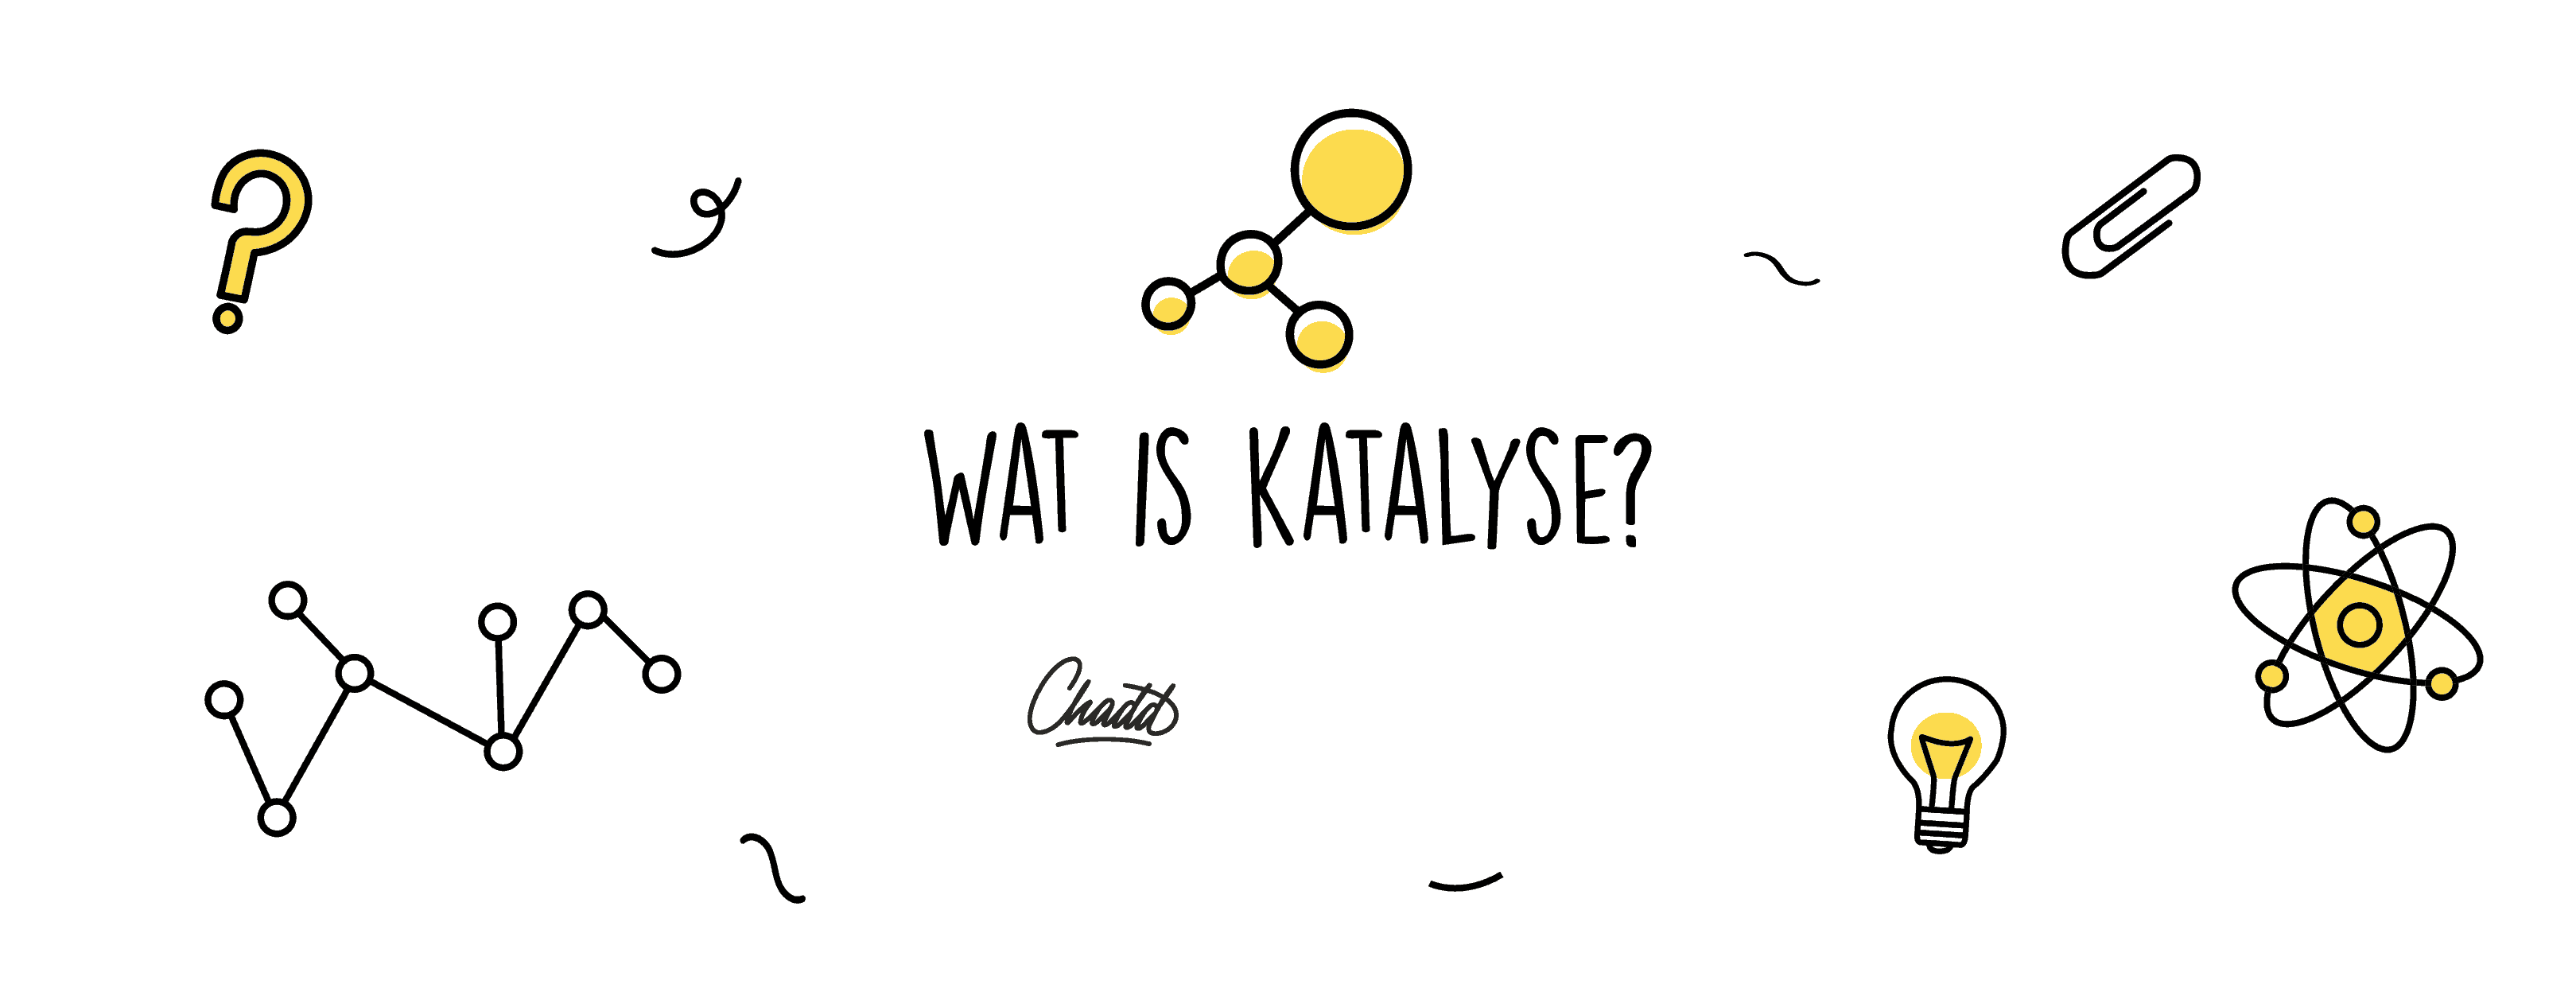 katalyse